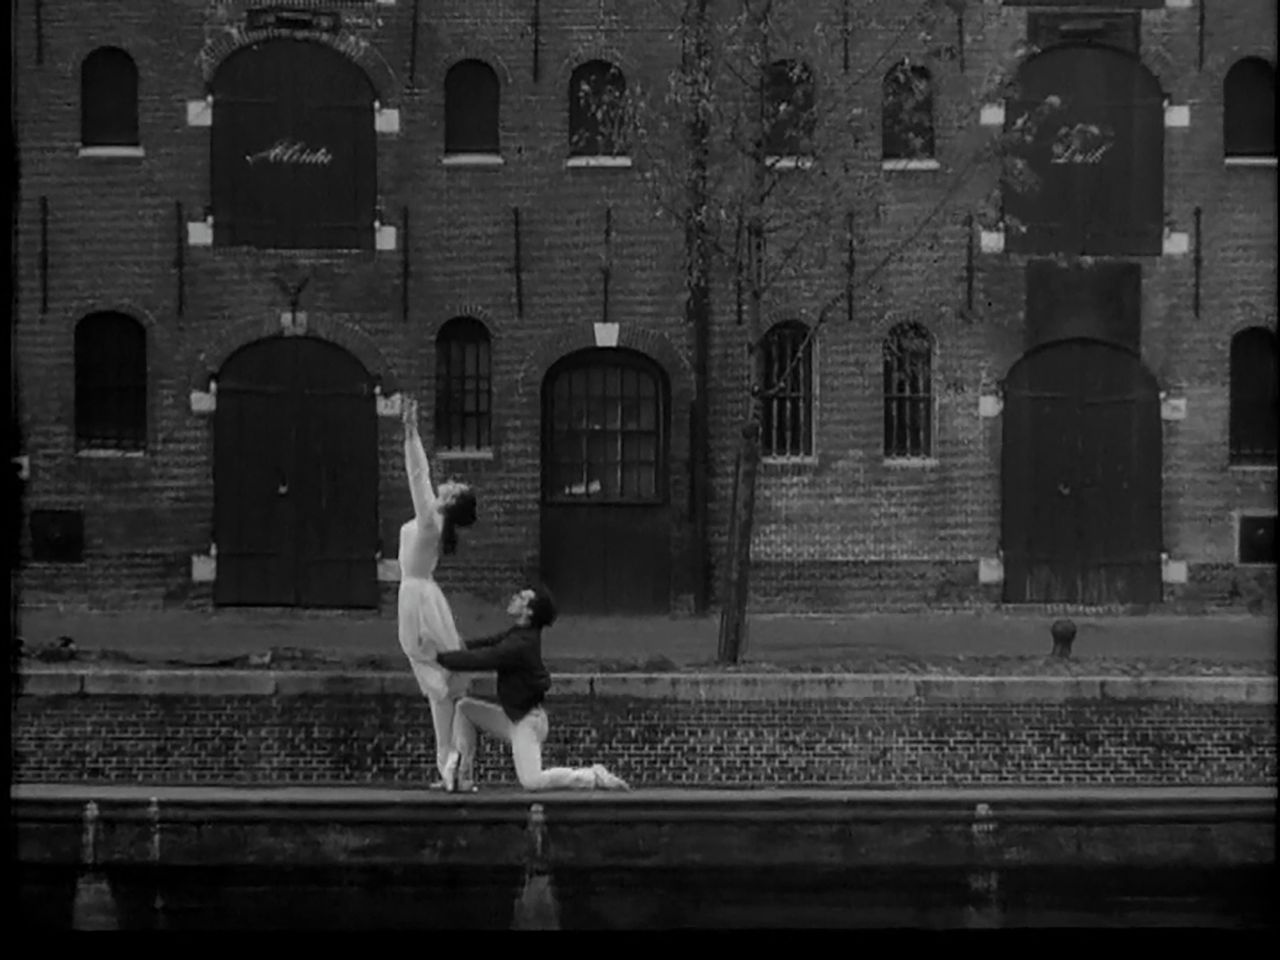 Jaap Flier en Hanny van Leeuwen dansen op een schuit in Amsterdam in de dansfilm Kain & Abel uit 1961. Choreografie van Hans van Manen, filmregie van Joes Odufré.